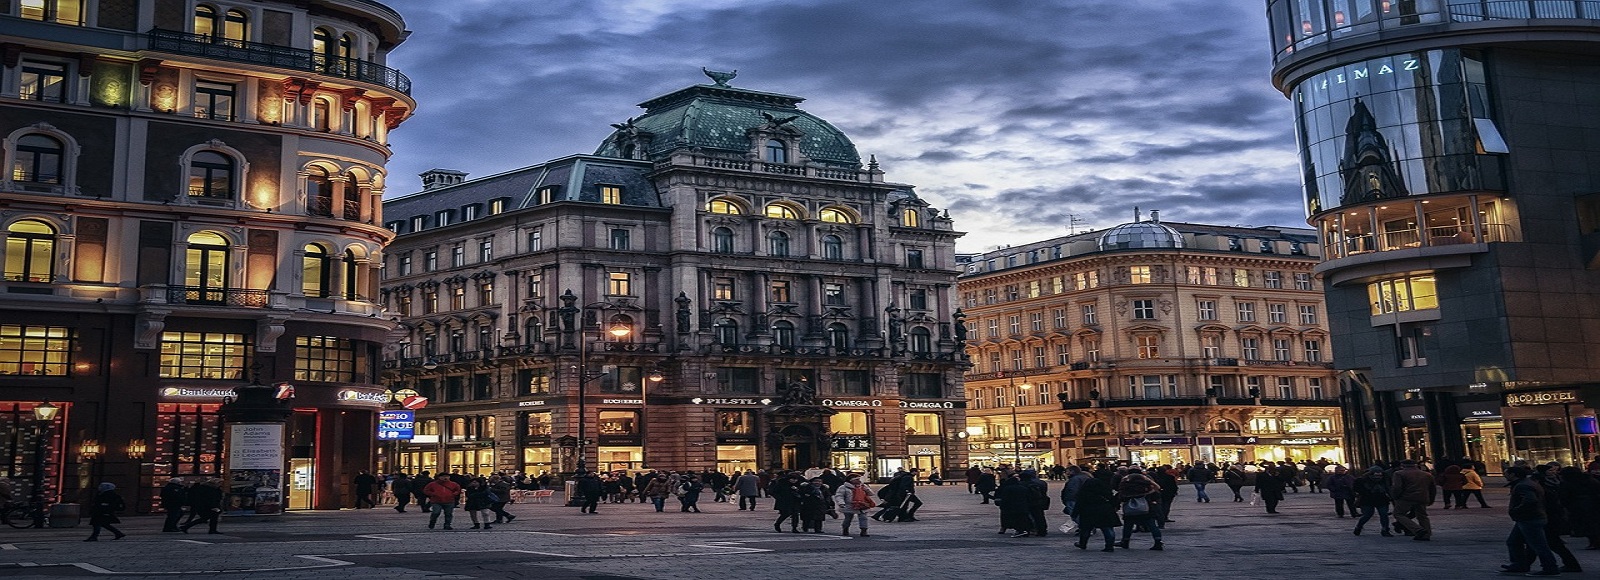 Ofertas de Traslados en Viena. Traslados económicos en Viena 